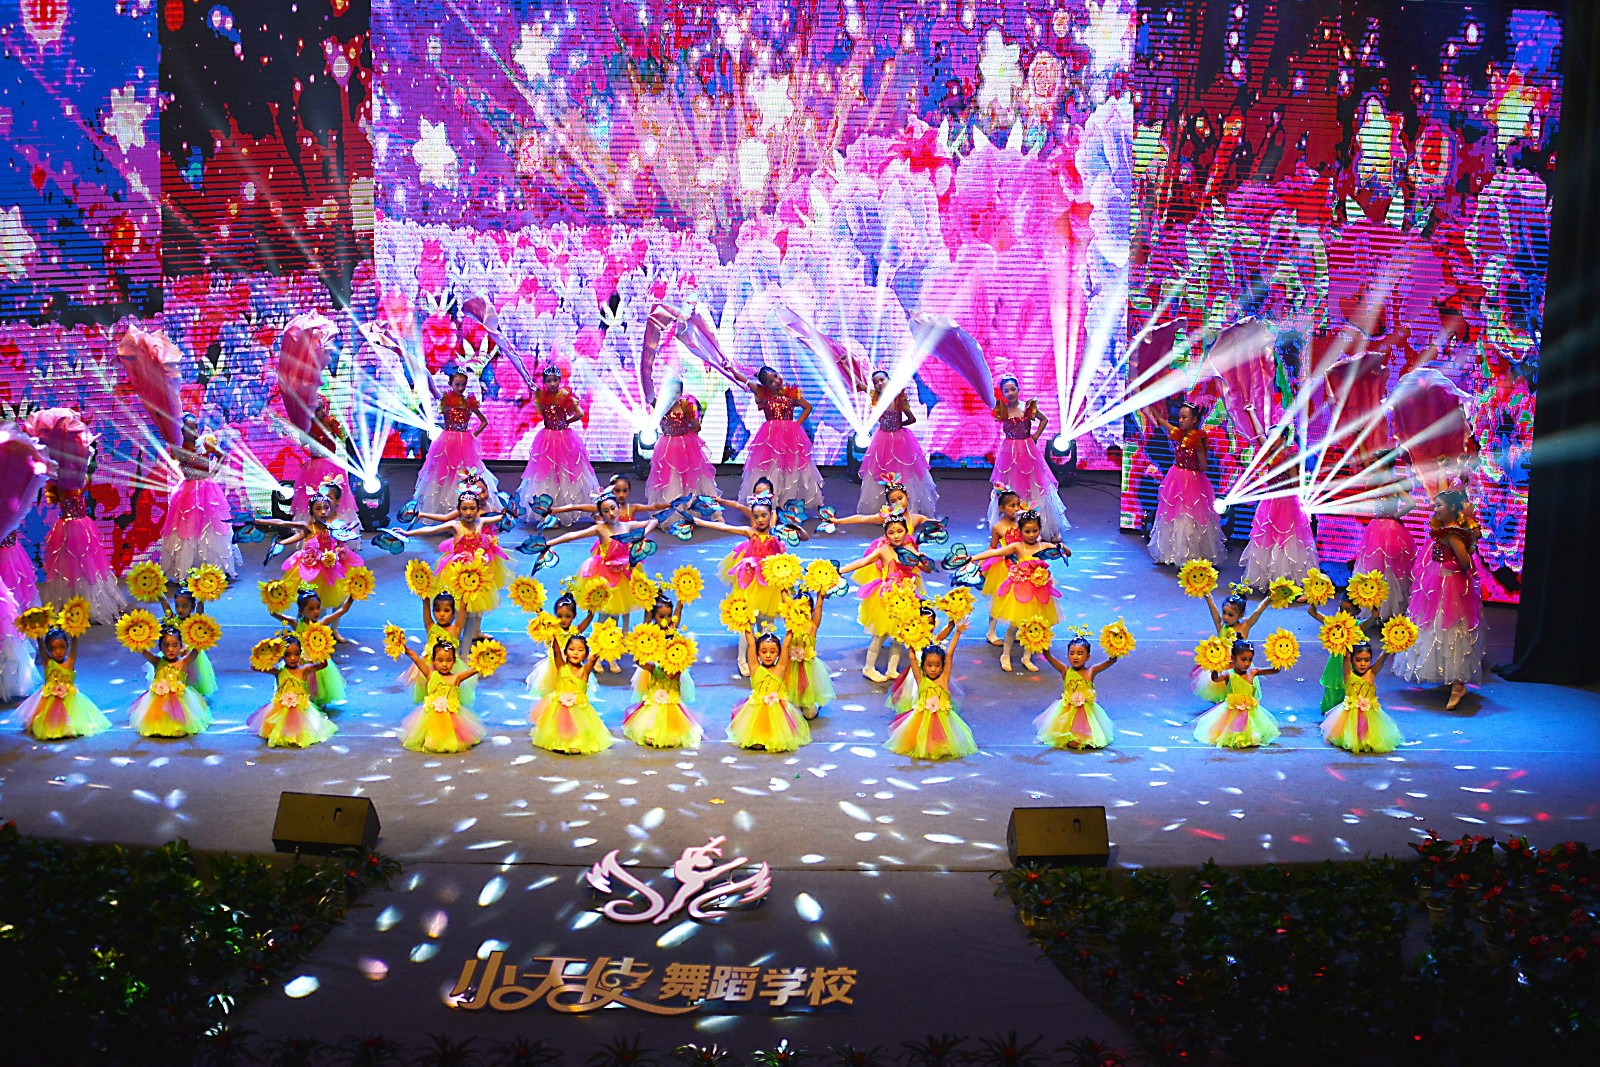 2018驻马店小天使舞蹈学校大型舞蹈展演活动举行